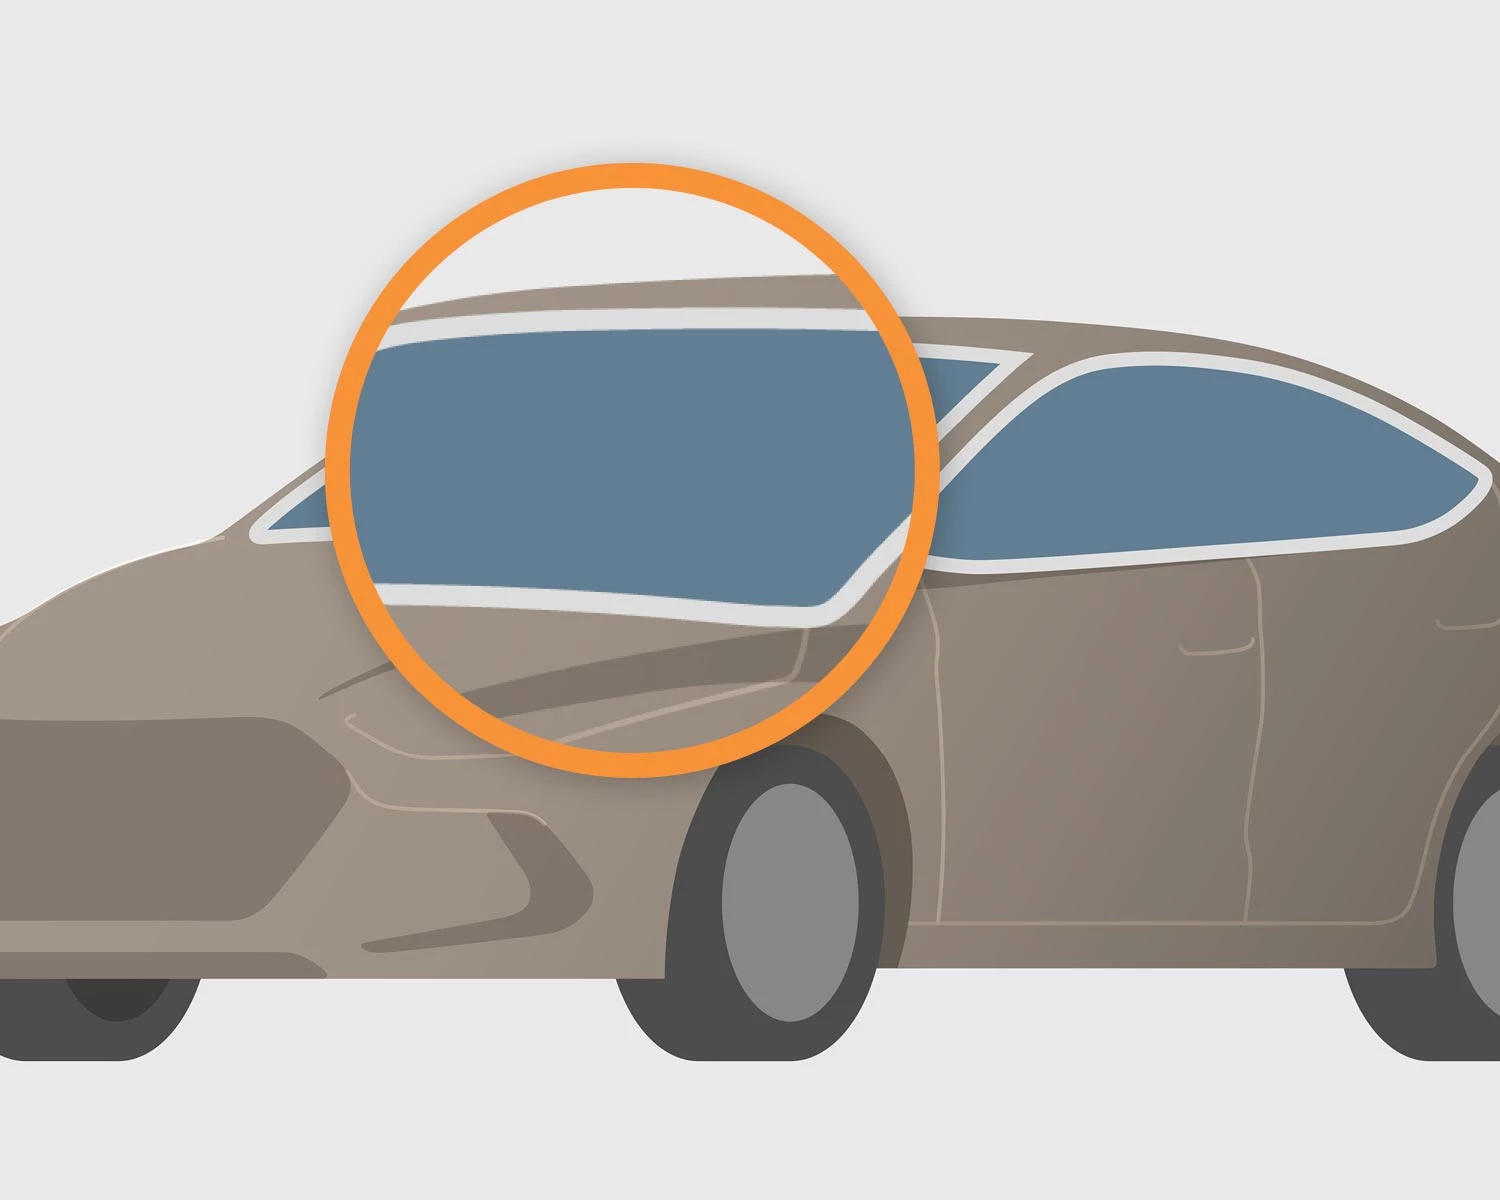 Die Verglasung vom Auto wird mit einem orangenen Kreis markiert